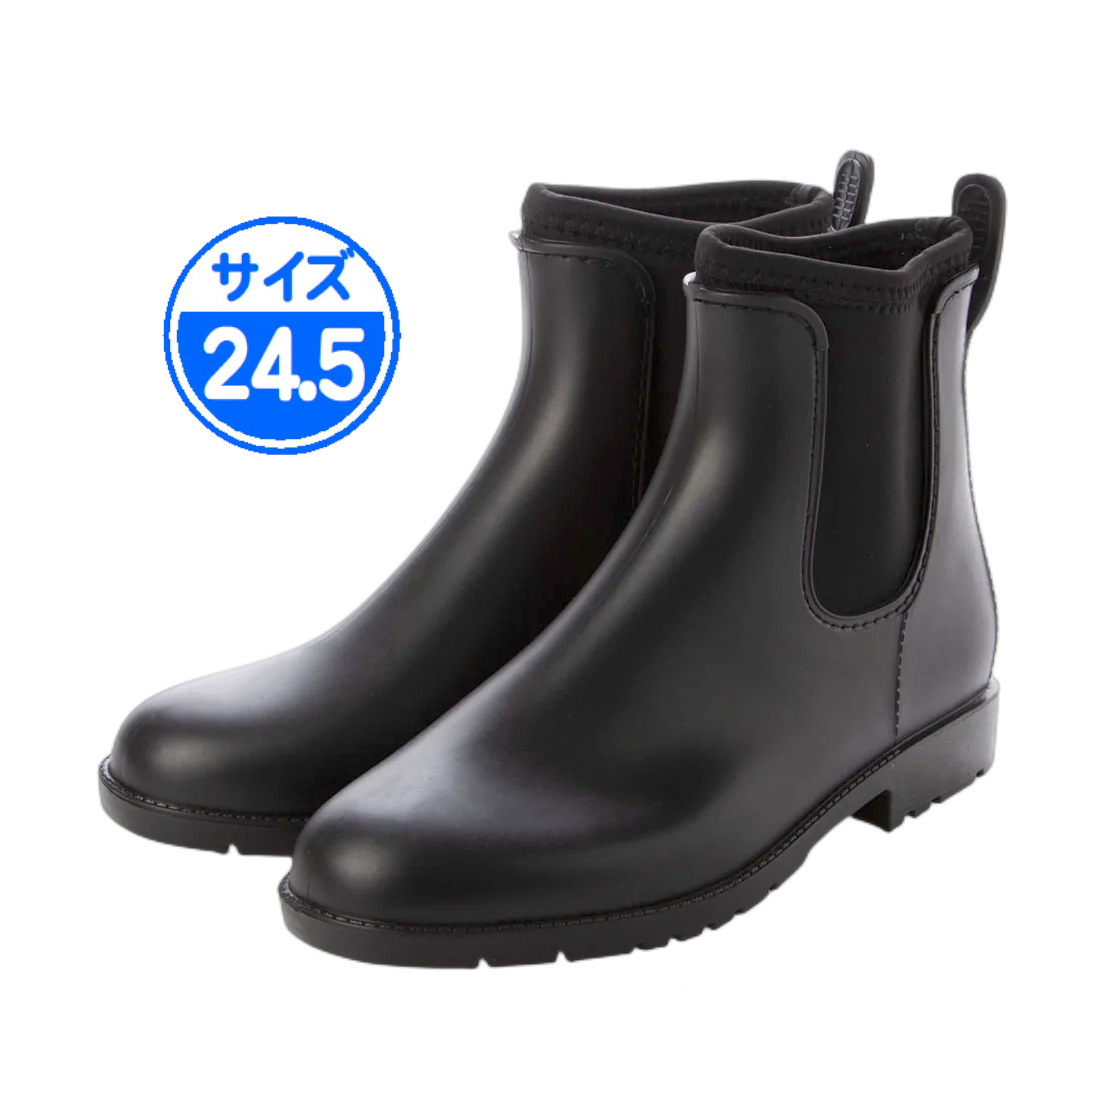 [ outlet ] side-gore rain boots black 24.5cm black 22032